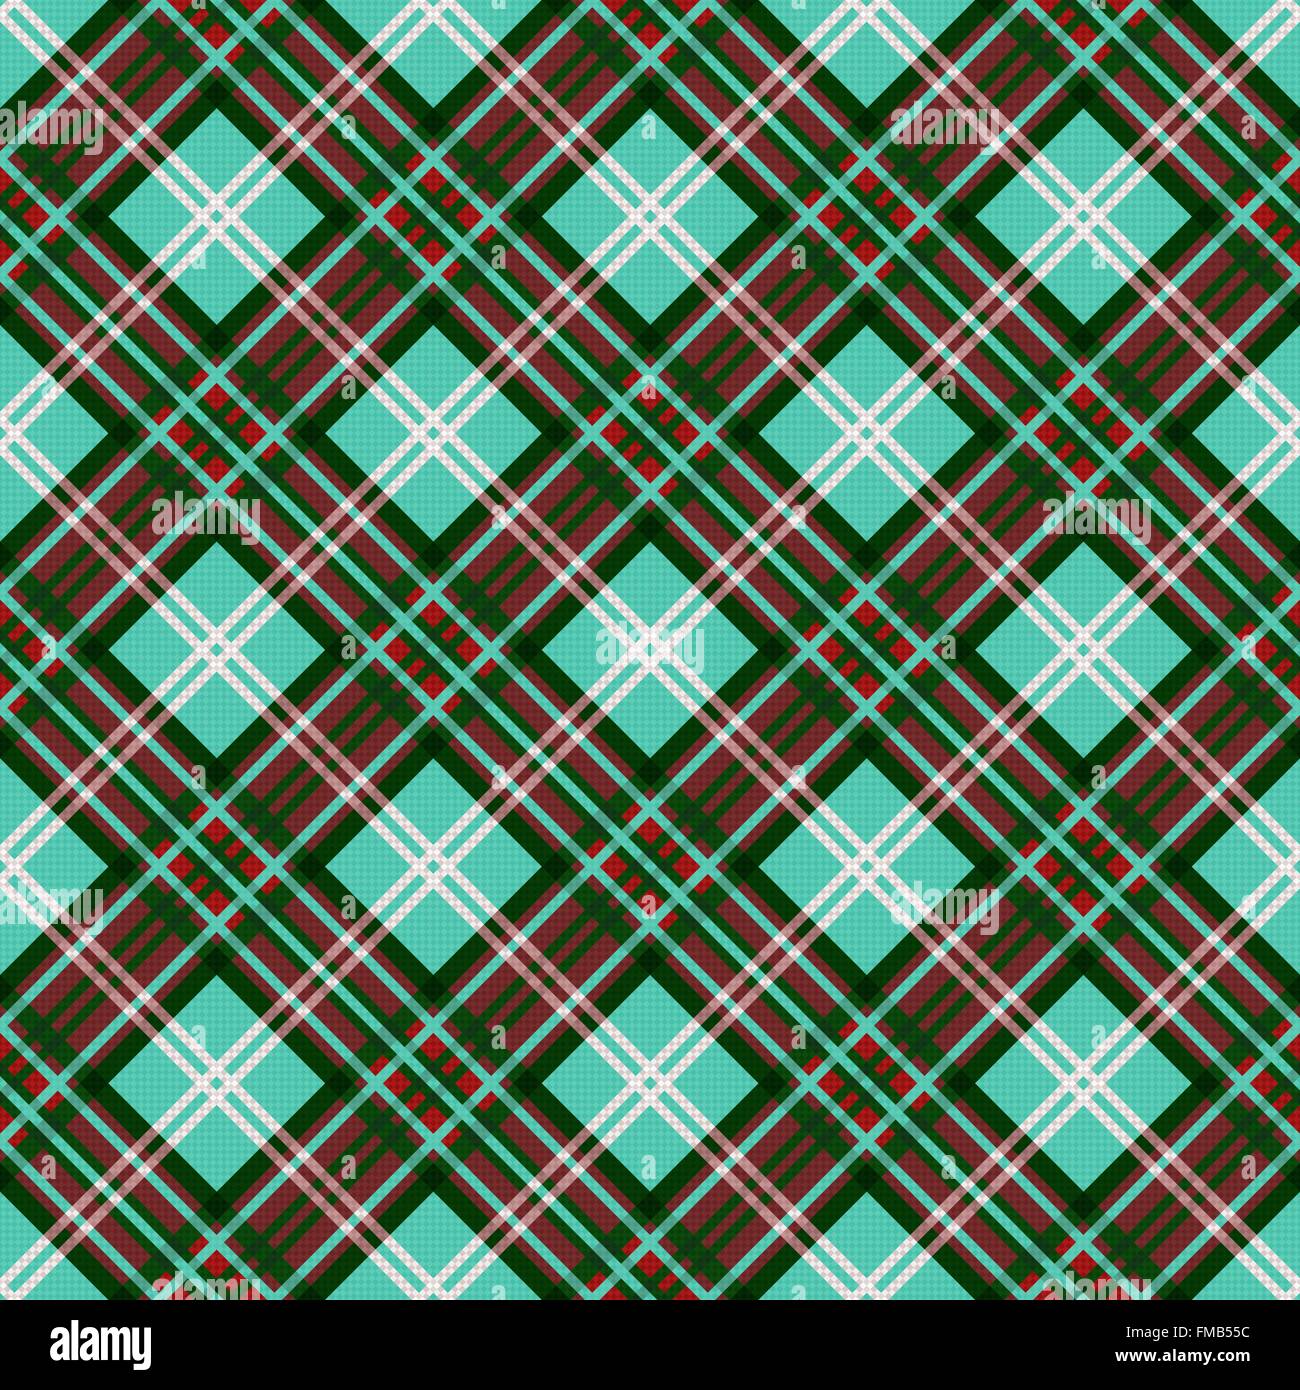 Vecteur diagonal transparente motif coloré contraste principalement en turquoise, rouge et blanc Illustration de Vecteur